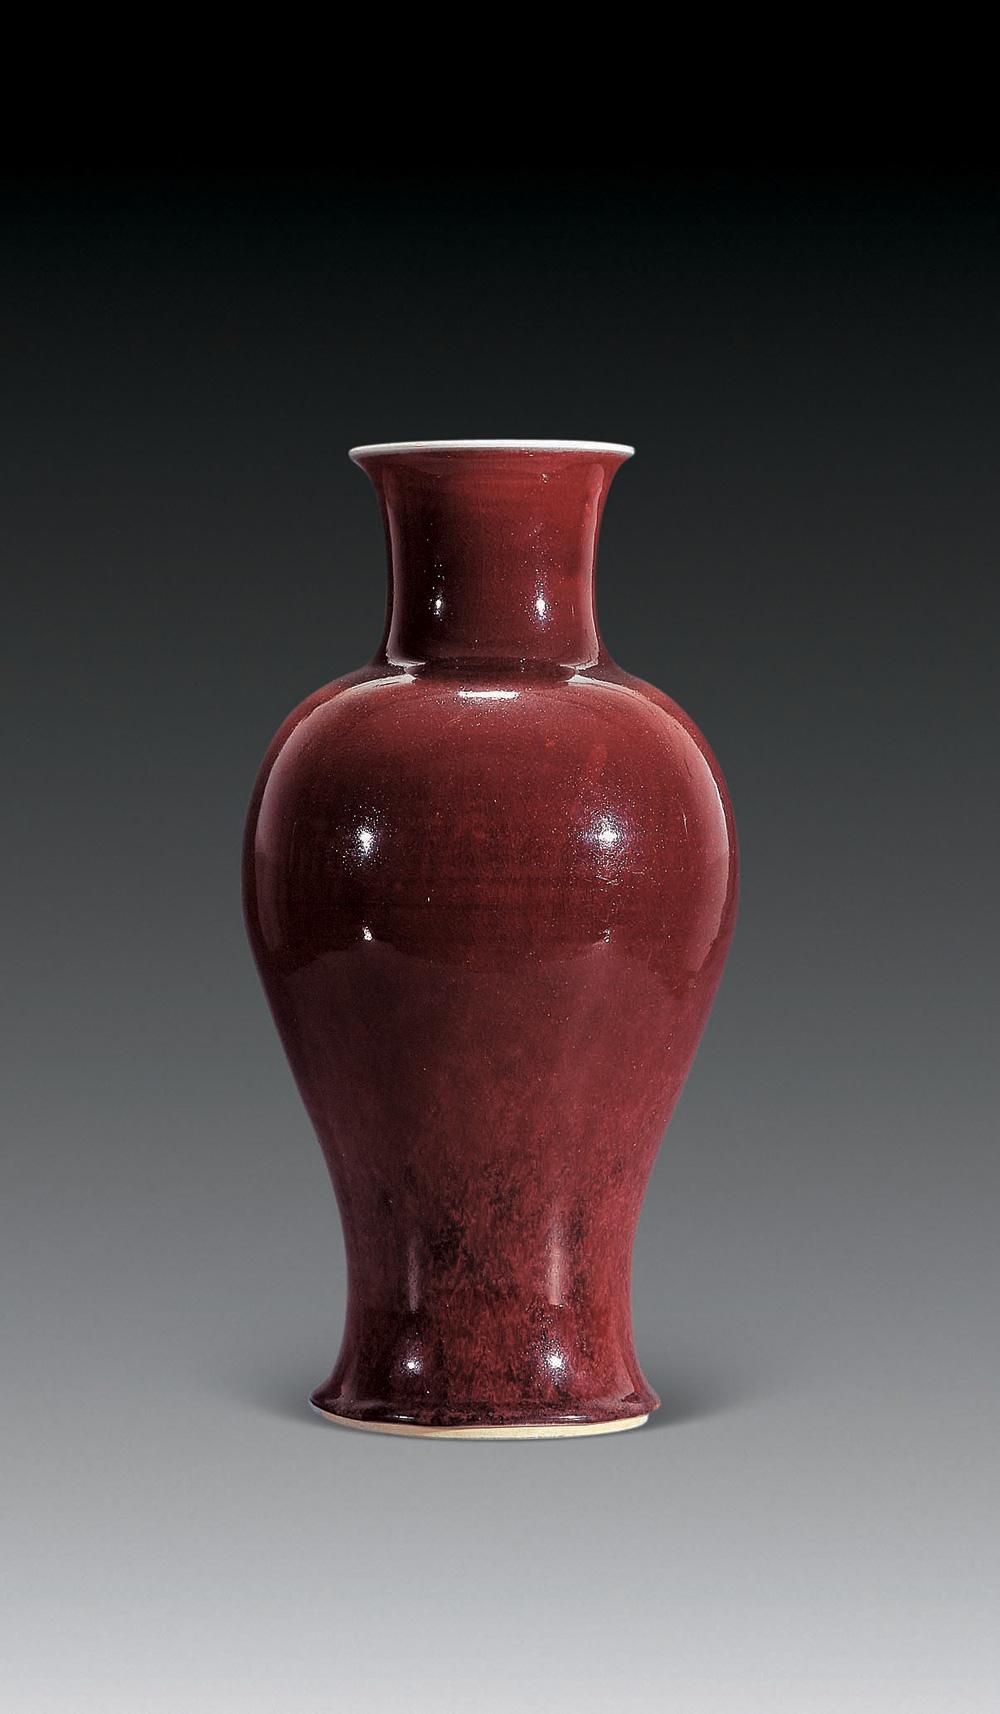 清代红釉瓷器特征图片